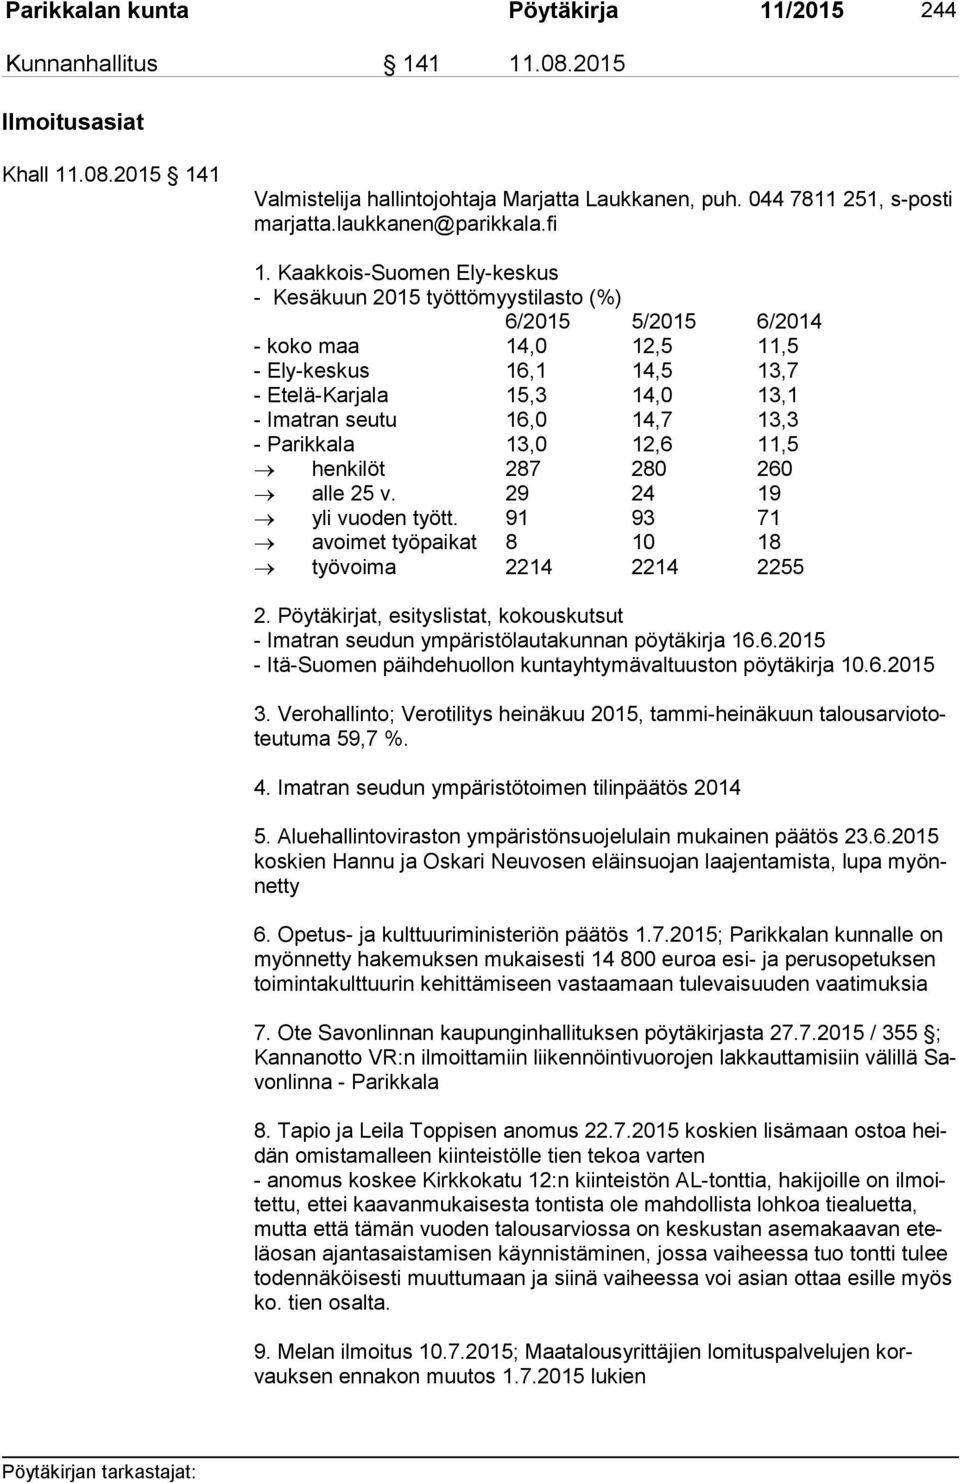 Kaakkois-Suomen Ely-keskus - Kesäkuun 2015 työttömyystilasto (%) 6/2015 5/2015 6/2014 - koko maa 14,0 12,5 11,5 - Ely-keskus 16,1 14,5 13,7 - Etelä-Karjala 15,3 14,0 13,1 - Imatran seutu 16,0 14,7